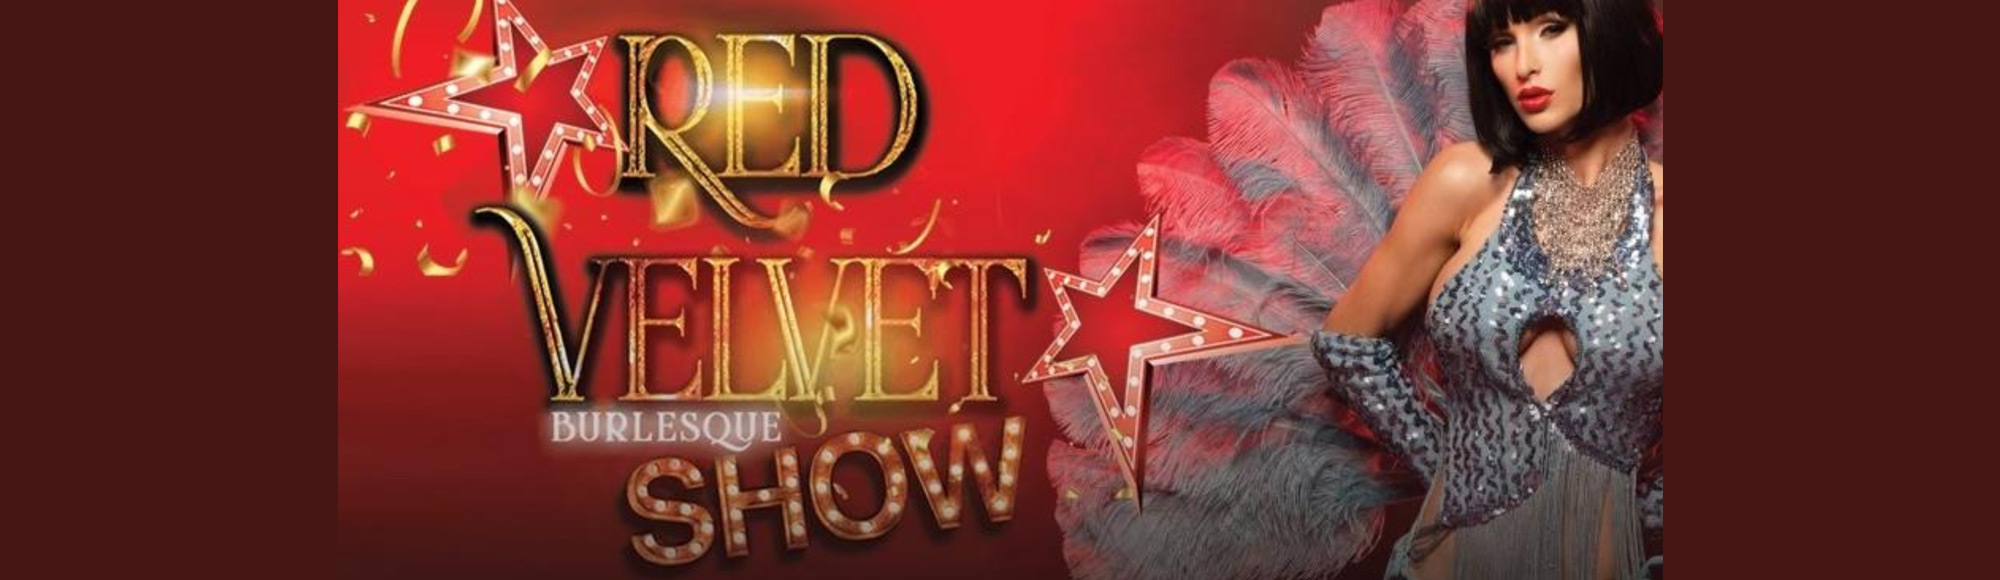 Red Velvet Burlesque Show show